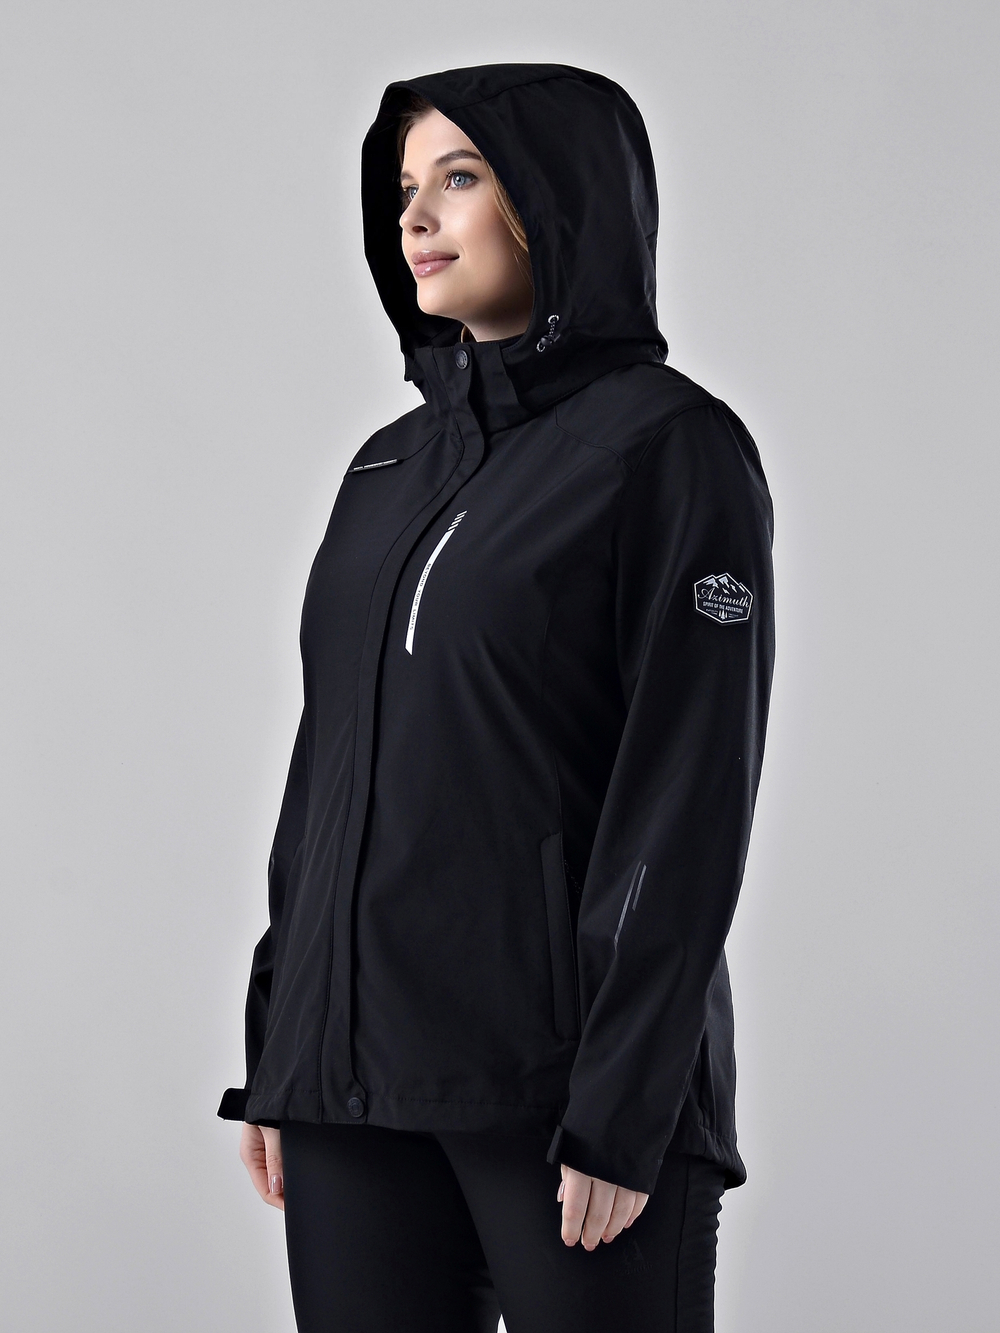 Женская куртка-виндстоппер софтшелл на флисе  БР 221/21836-1_207 Черный